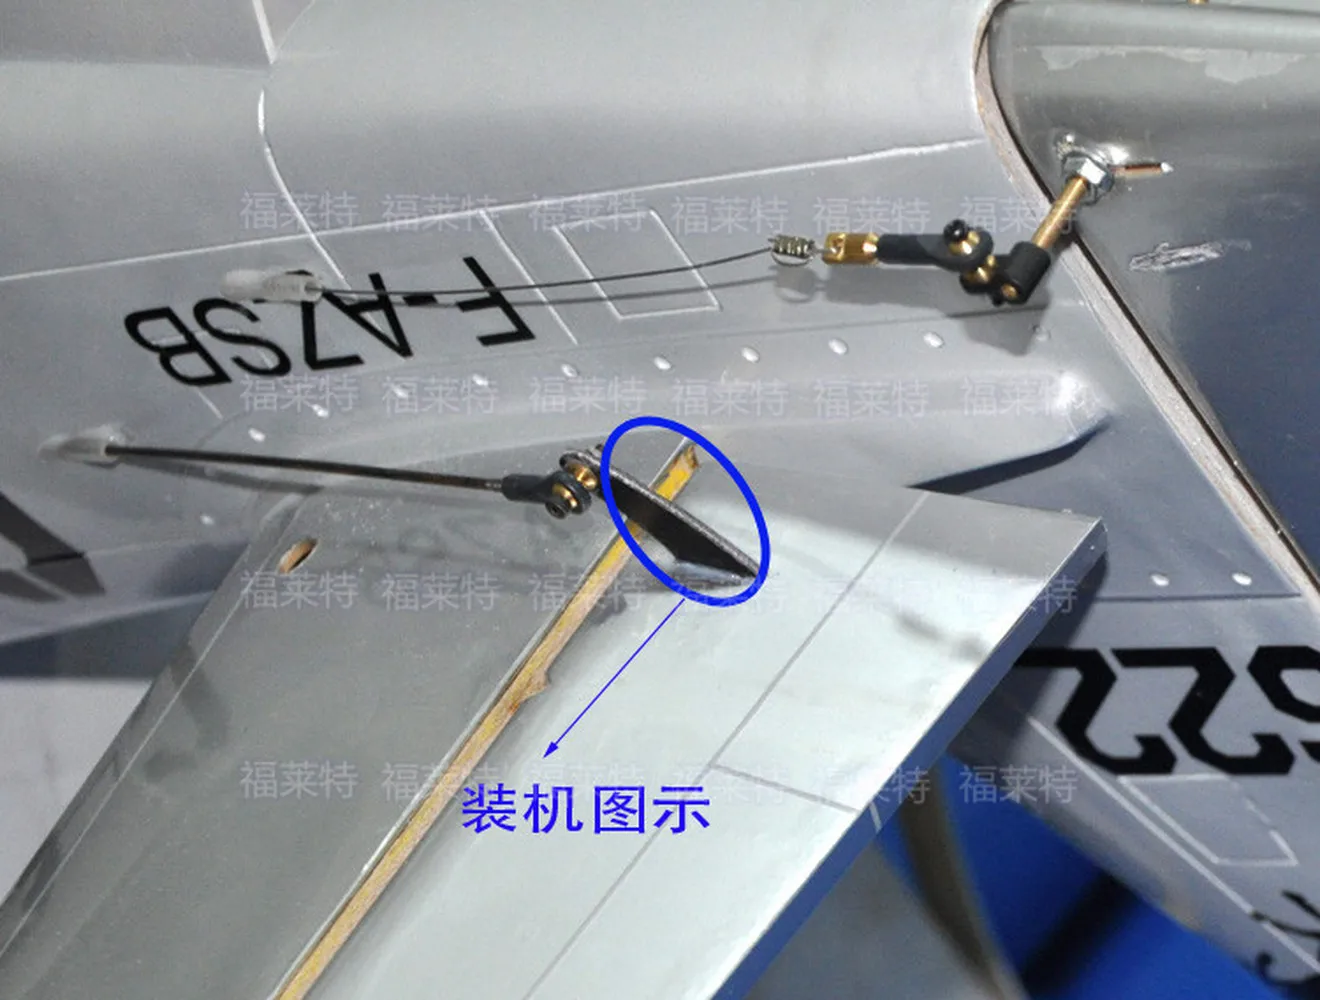 2 шт./упак. Рулевые рычаги, угловая деталь руля, серво-толкатель, шарнир для радиоуправляемой модели самолета 3